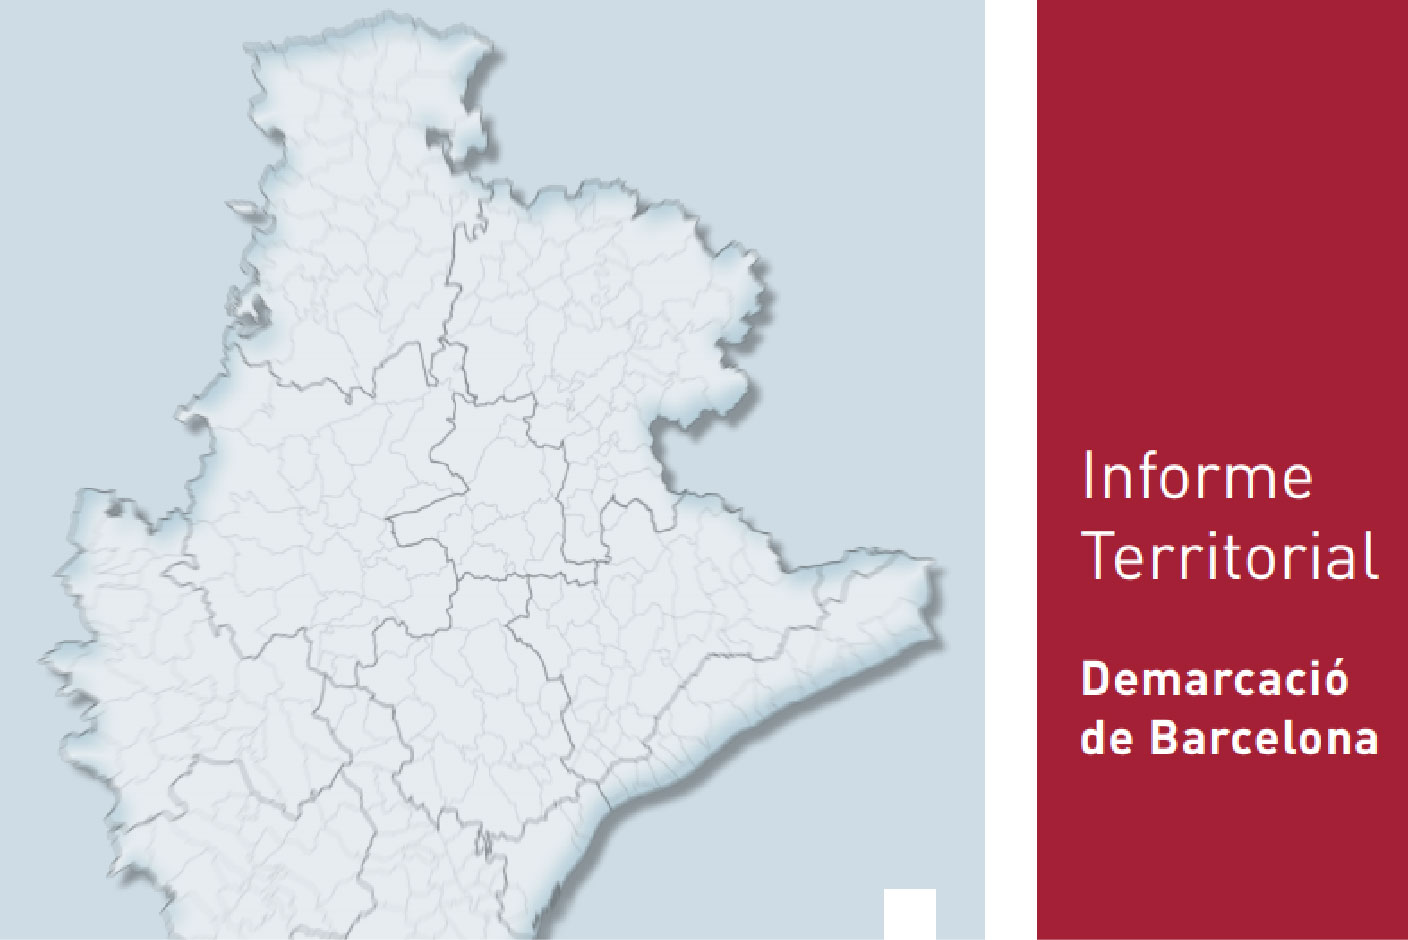 Informe Territorial Demarcacio Barcelona Invest Catalonia 01